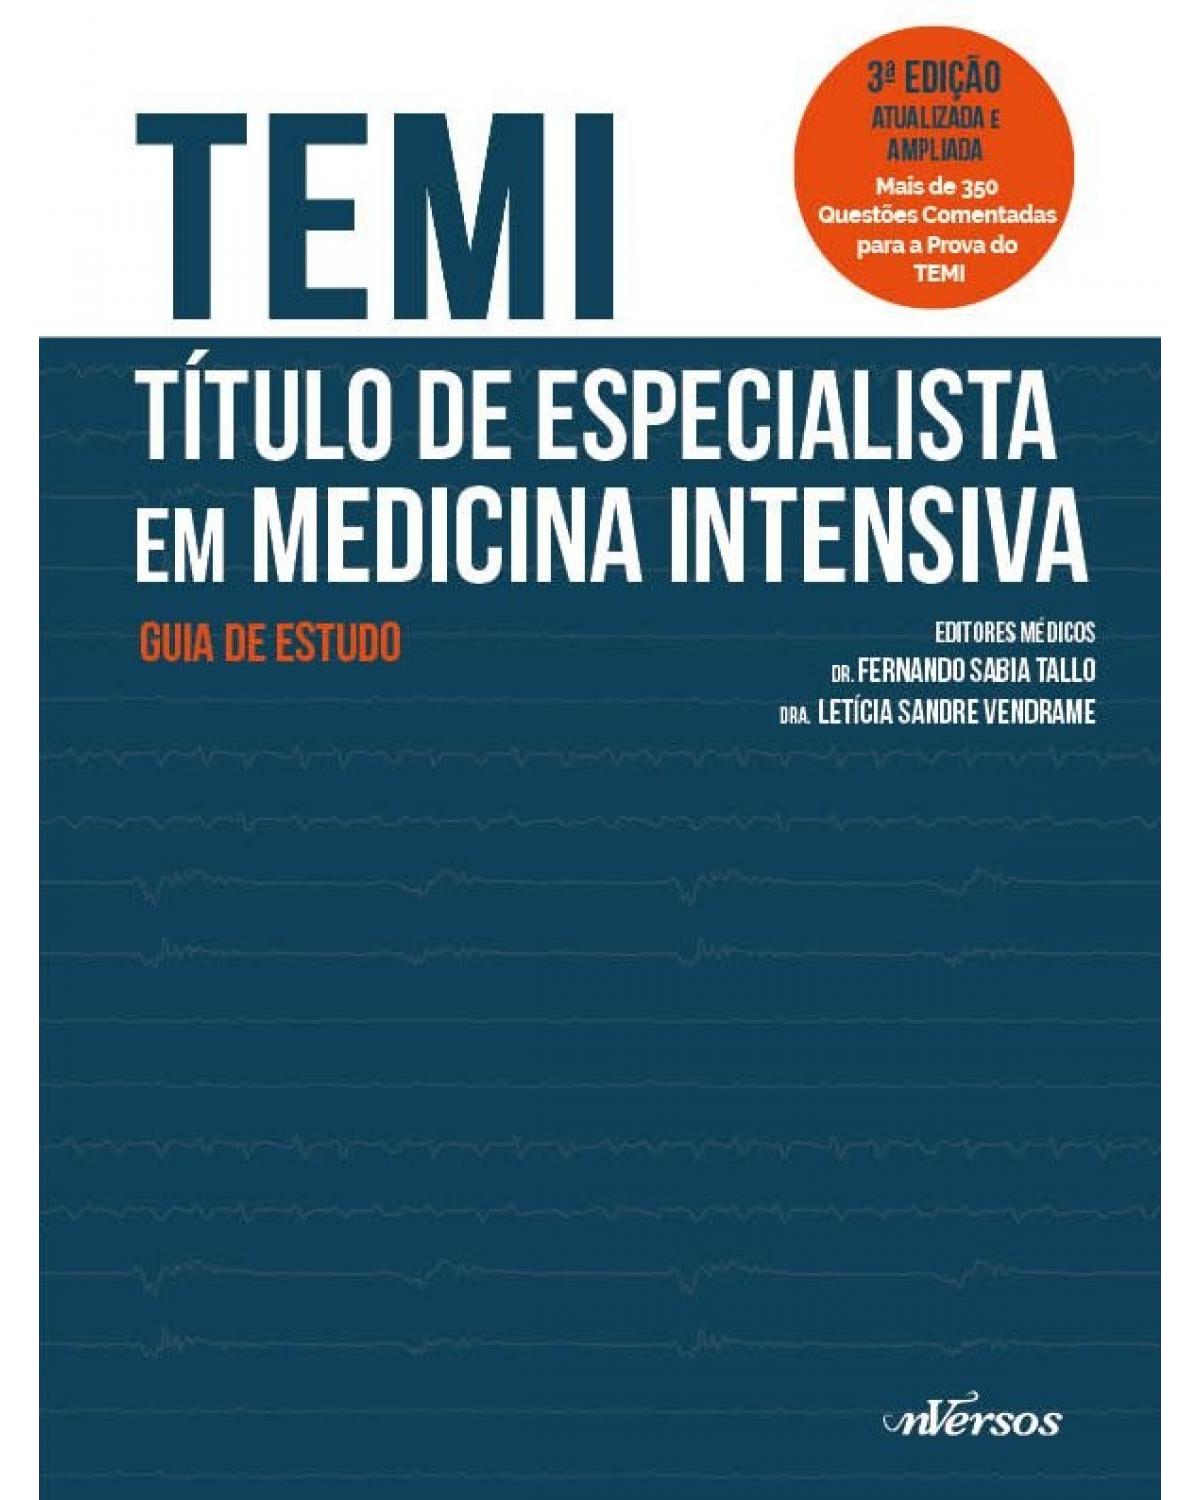 TEMI - Título de Especialista em Medicina Intensiva - guia de estudo - 3ª Edição | 2019